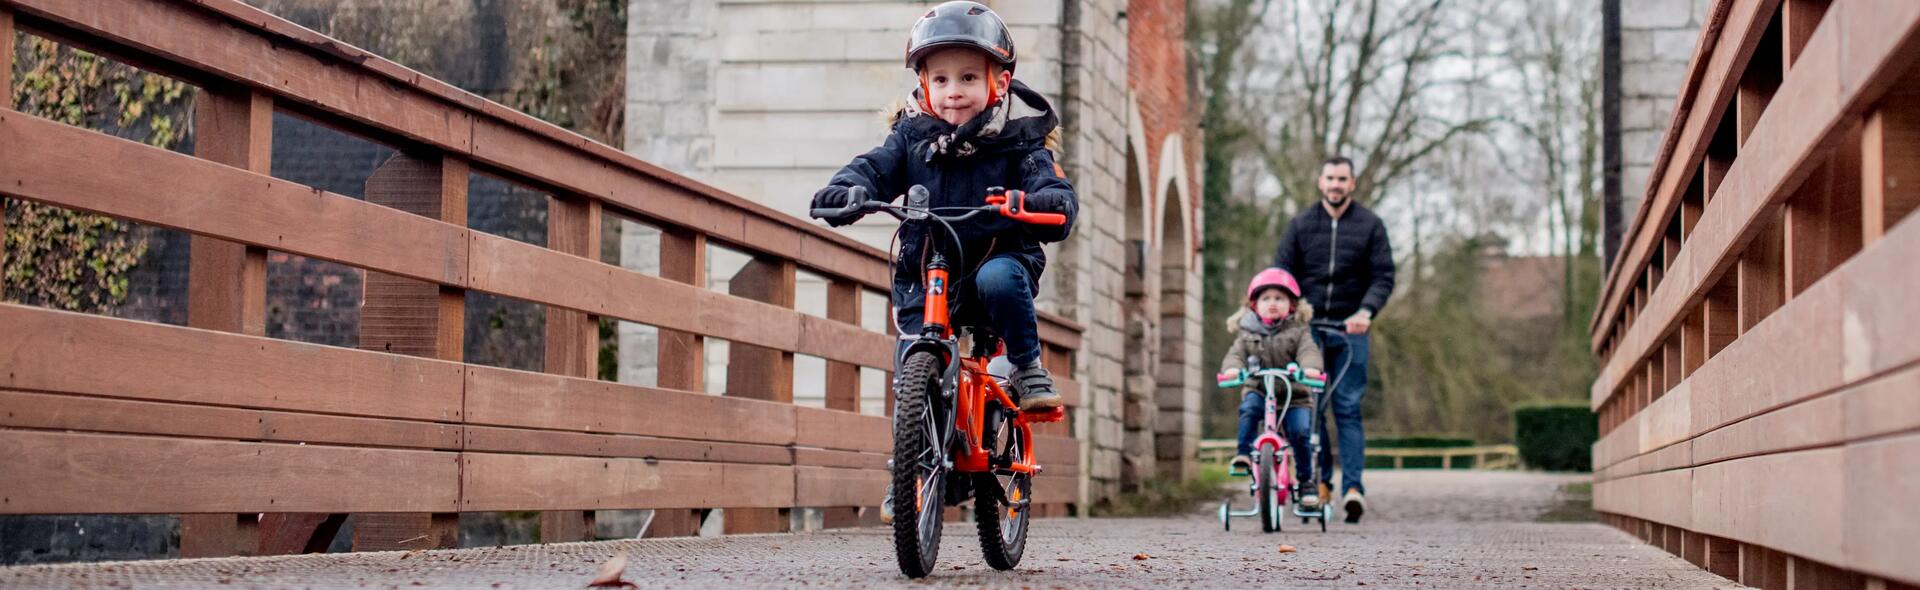 motivare i bambini ad andare in bici